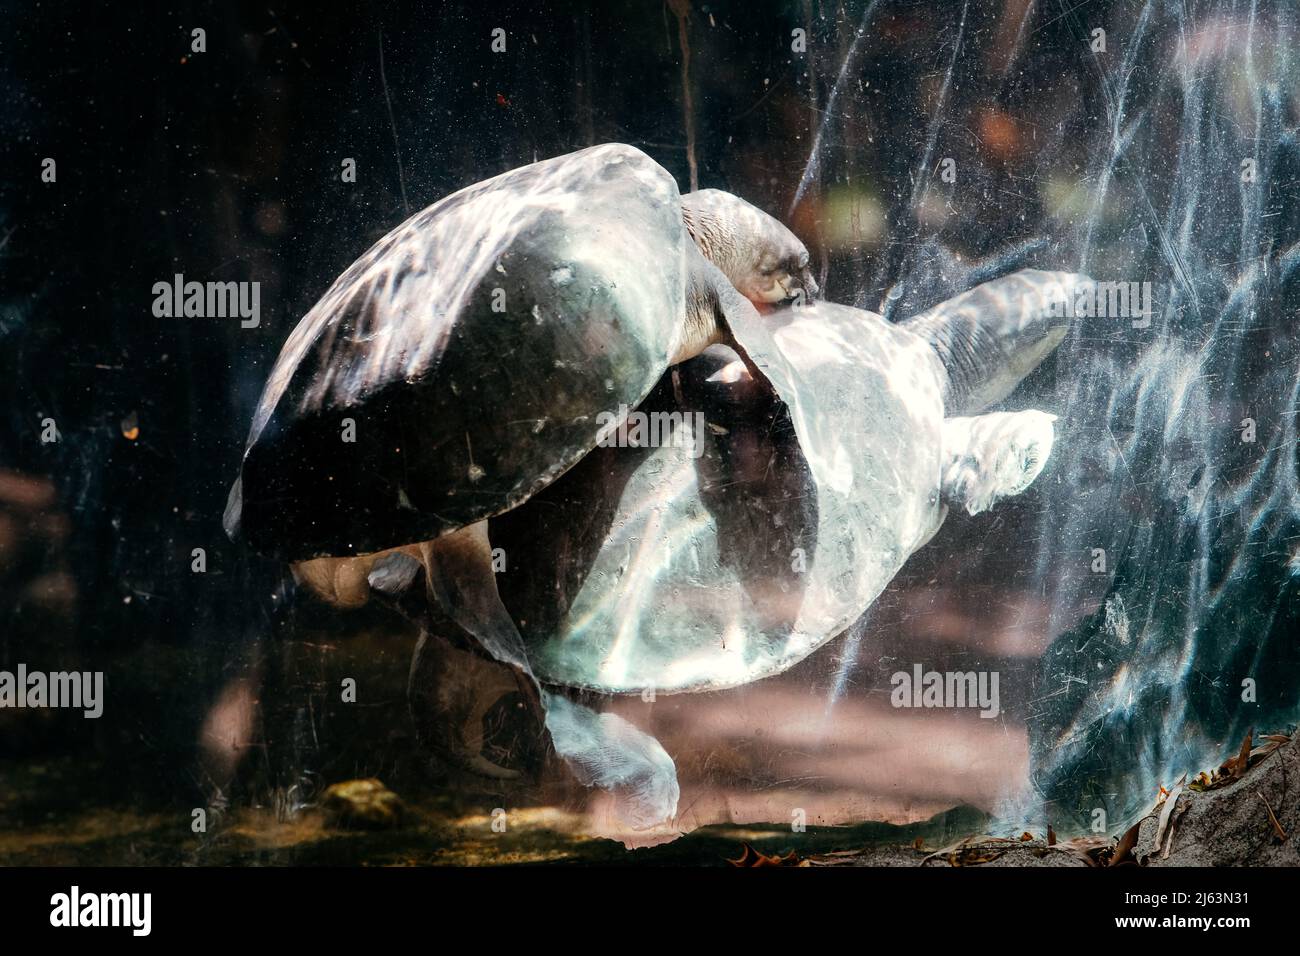 River terrapin or Labi - labi in Malay. Mating in an aquarium. Stock Photo